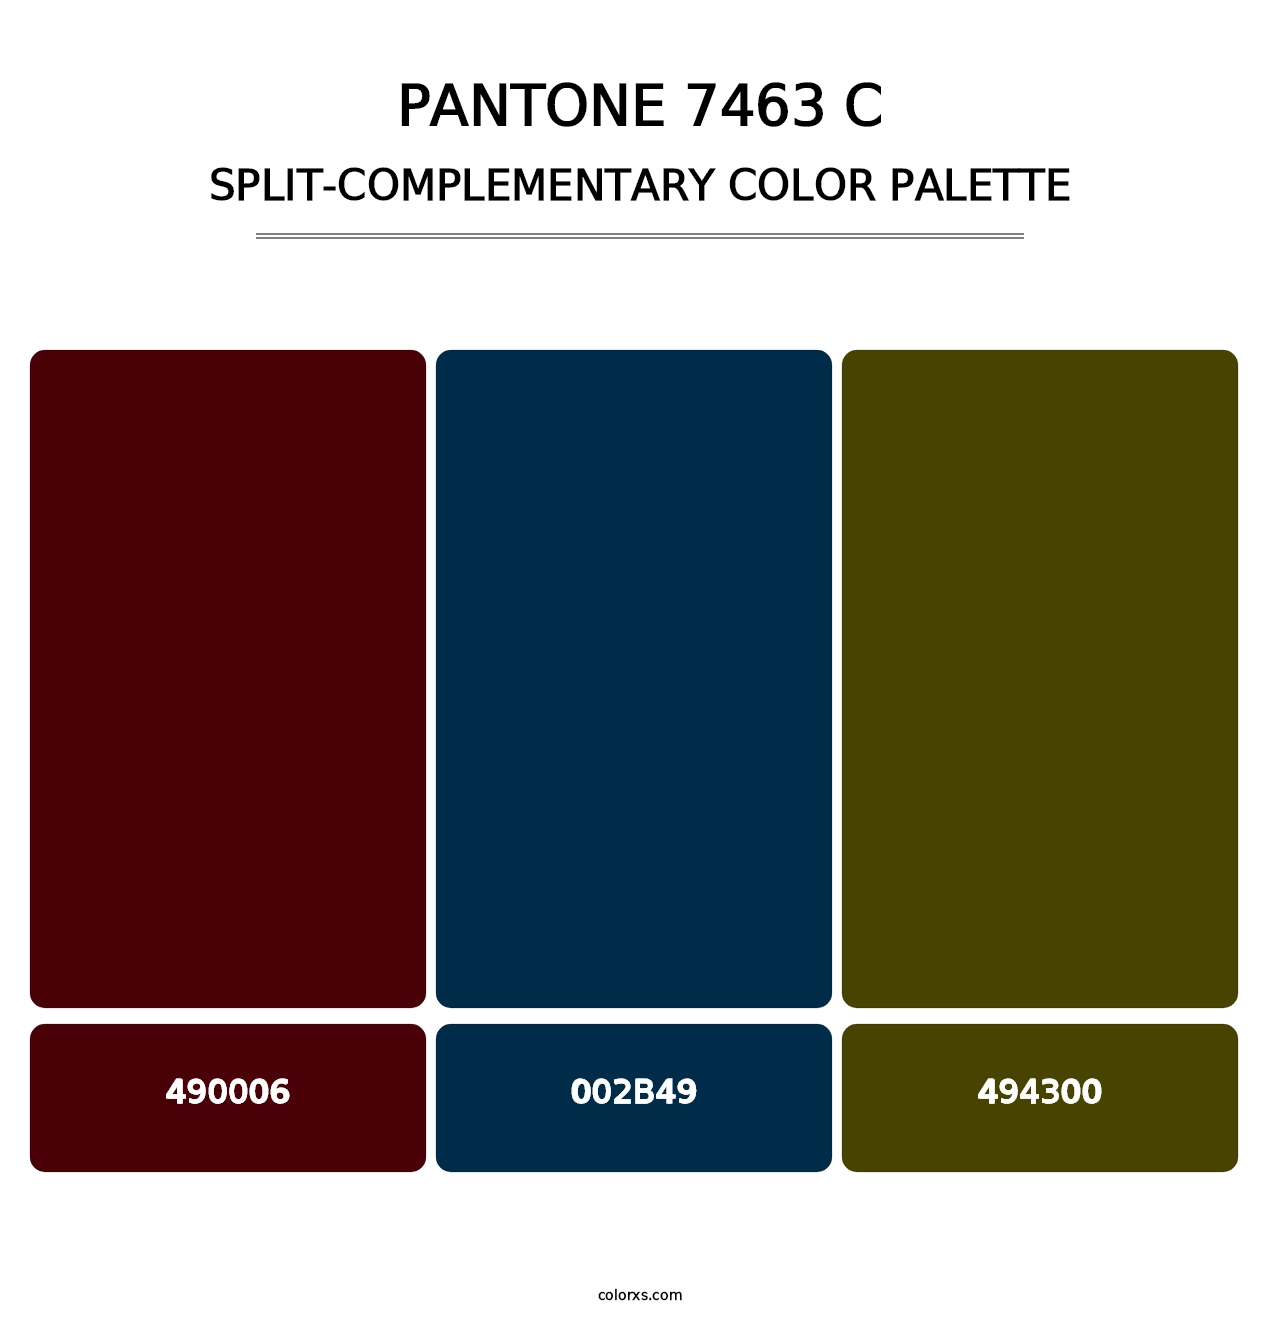 PANTONE 7463 C - Split-Complementary Color Palette